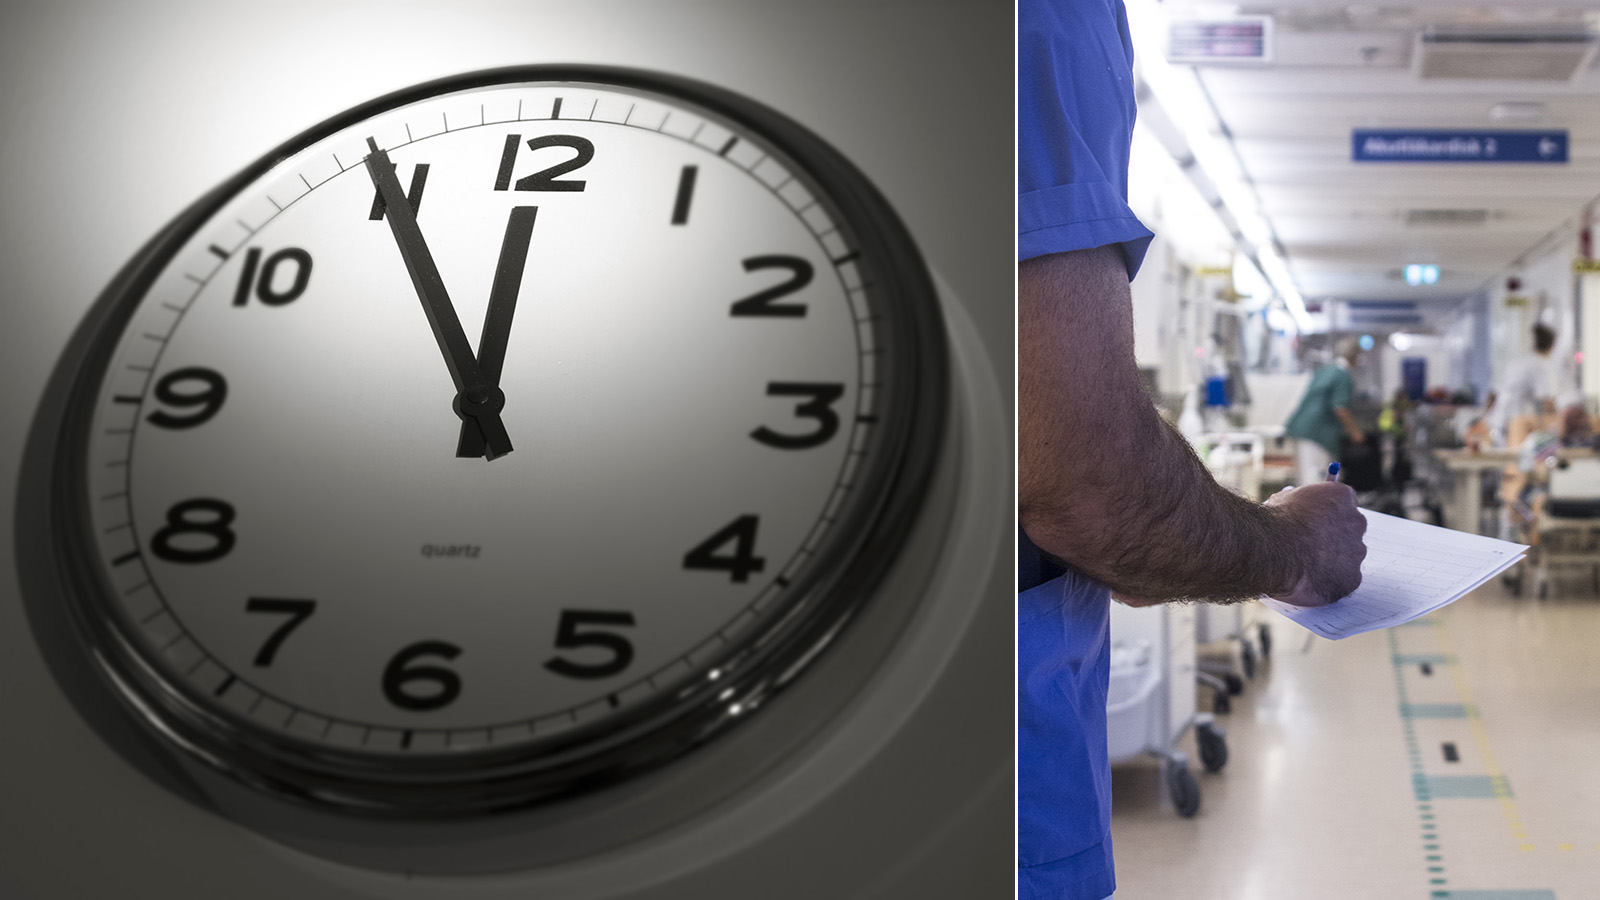 Sex timmars arbetsdag testas på värmländska sjukhus